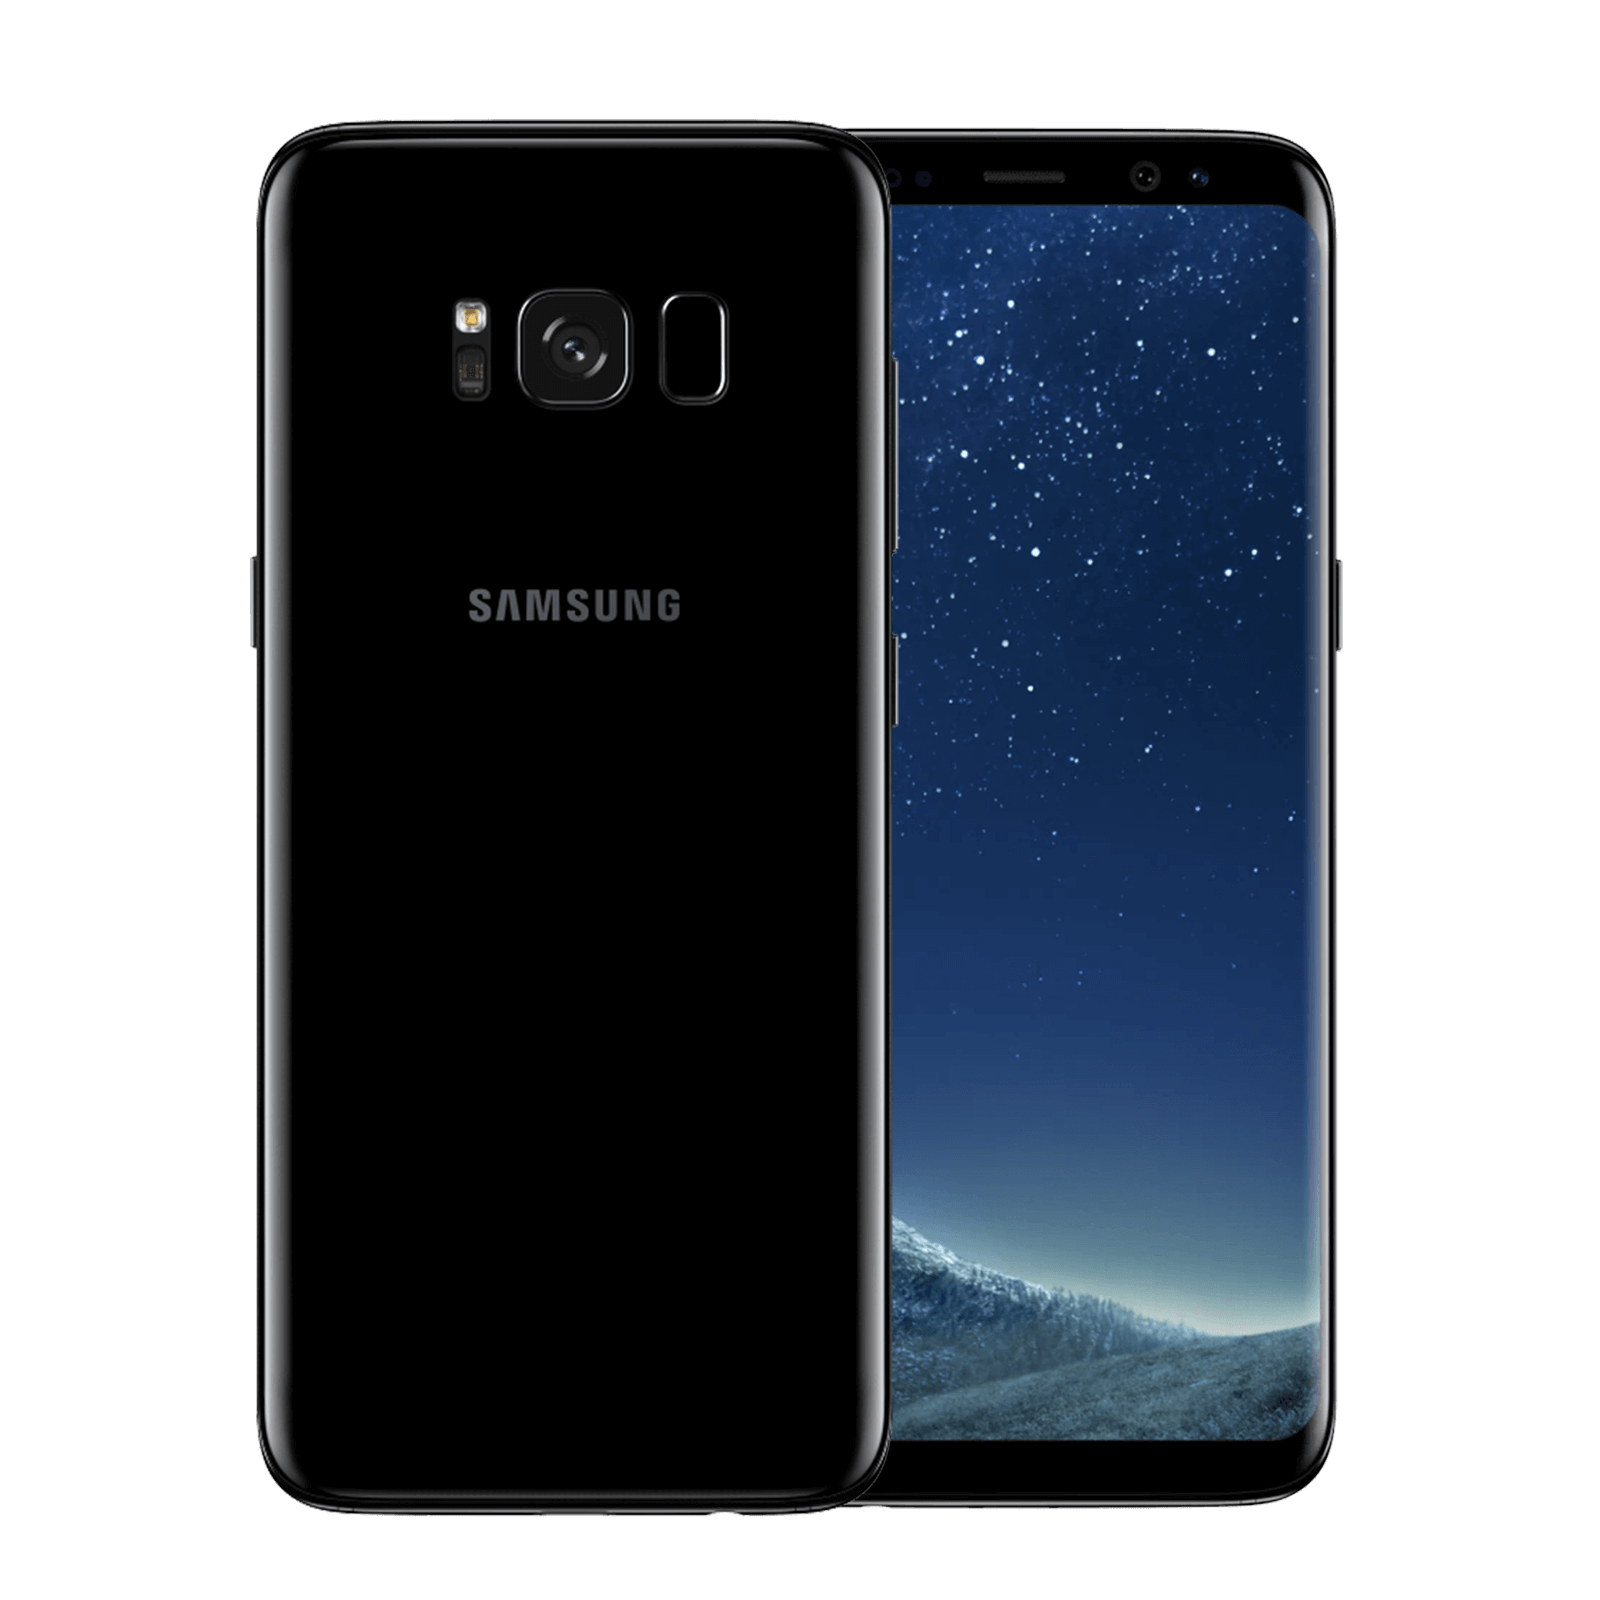 Samsung Galaxy S8 64GB Black Good - Unlocked